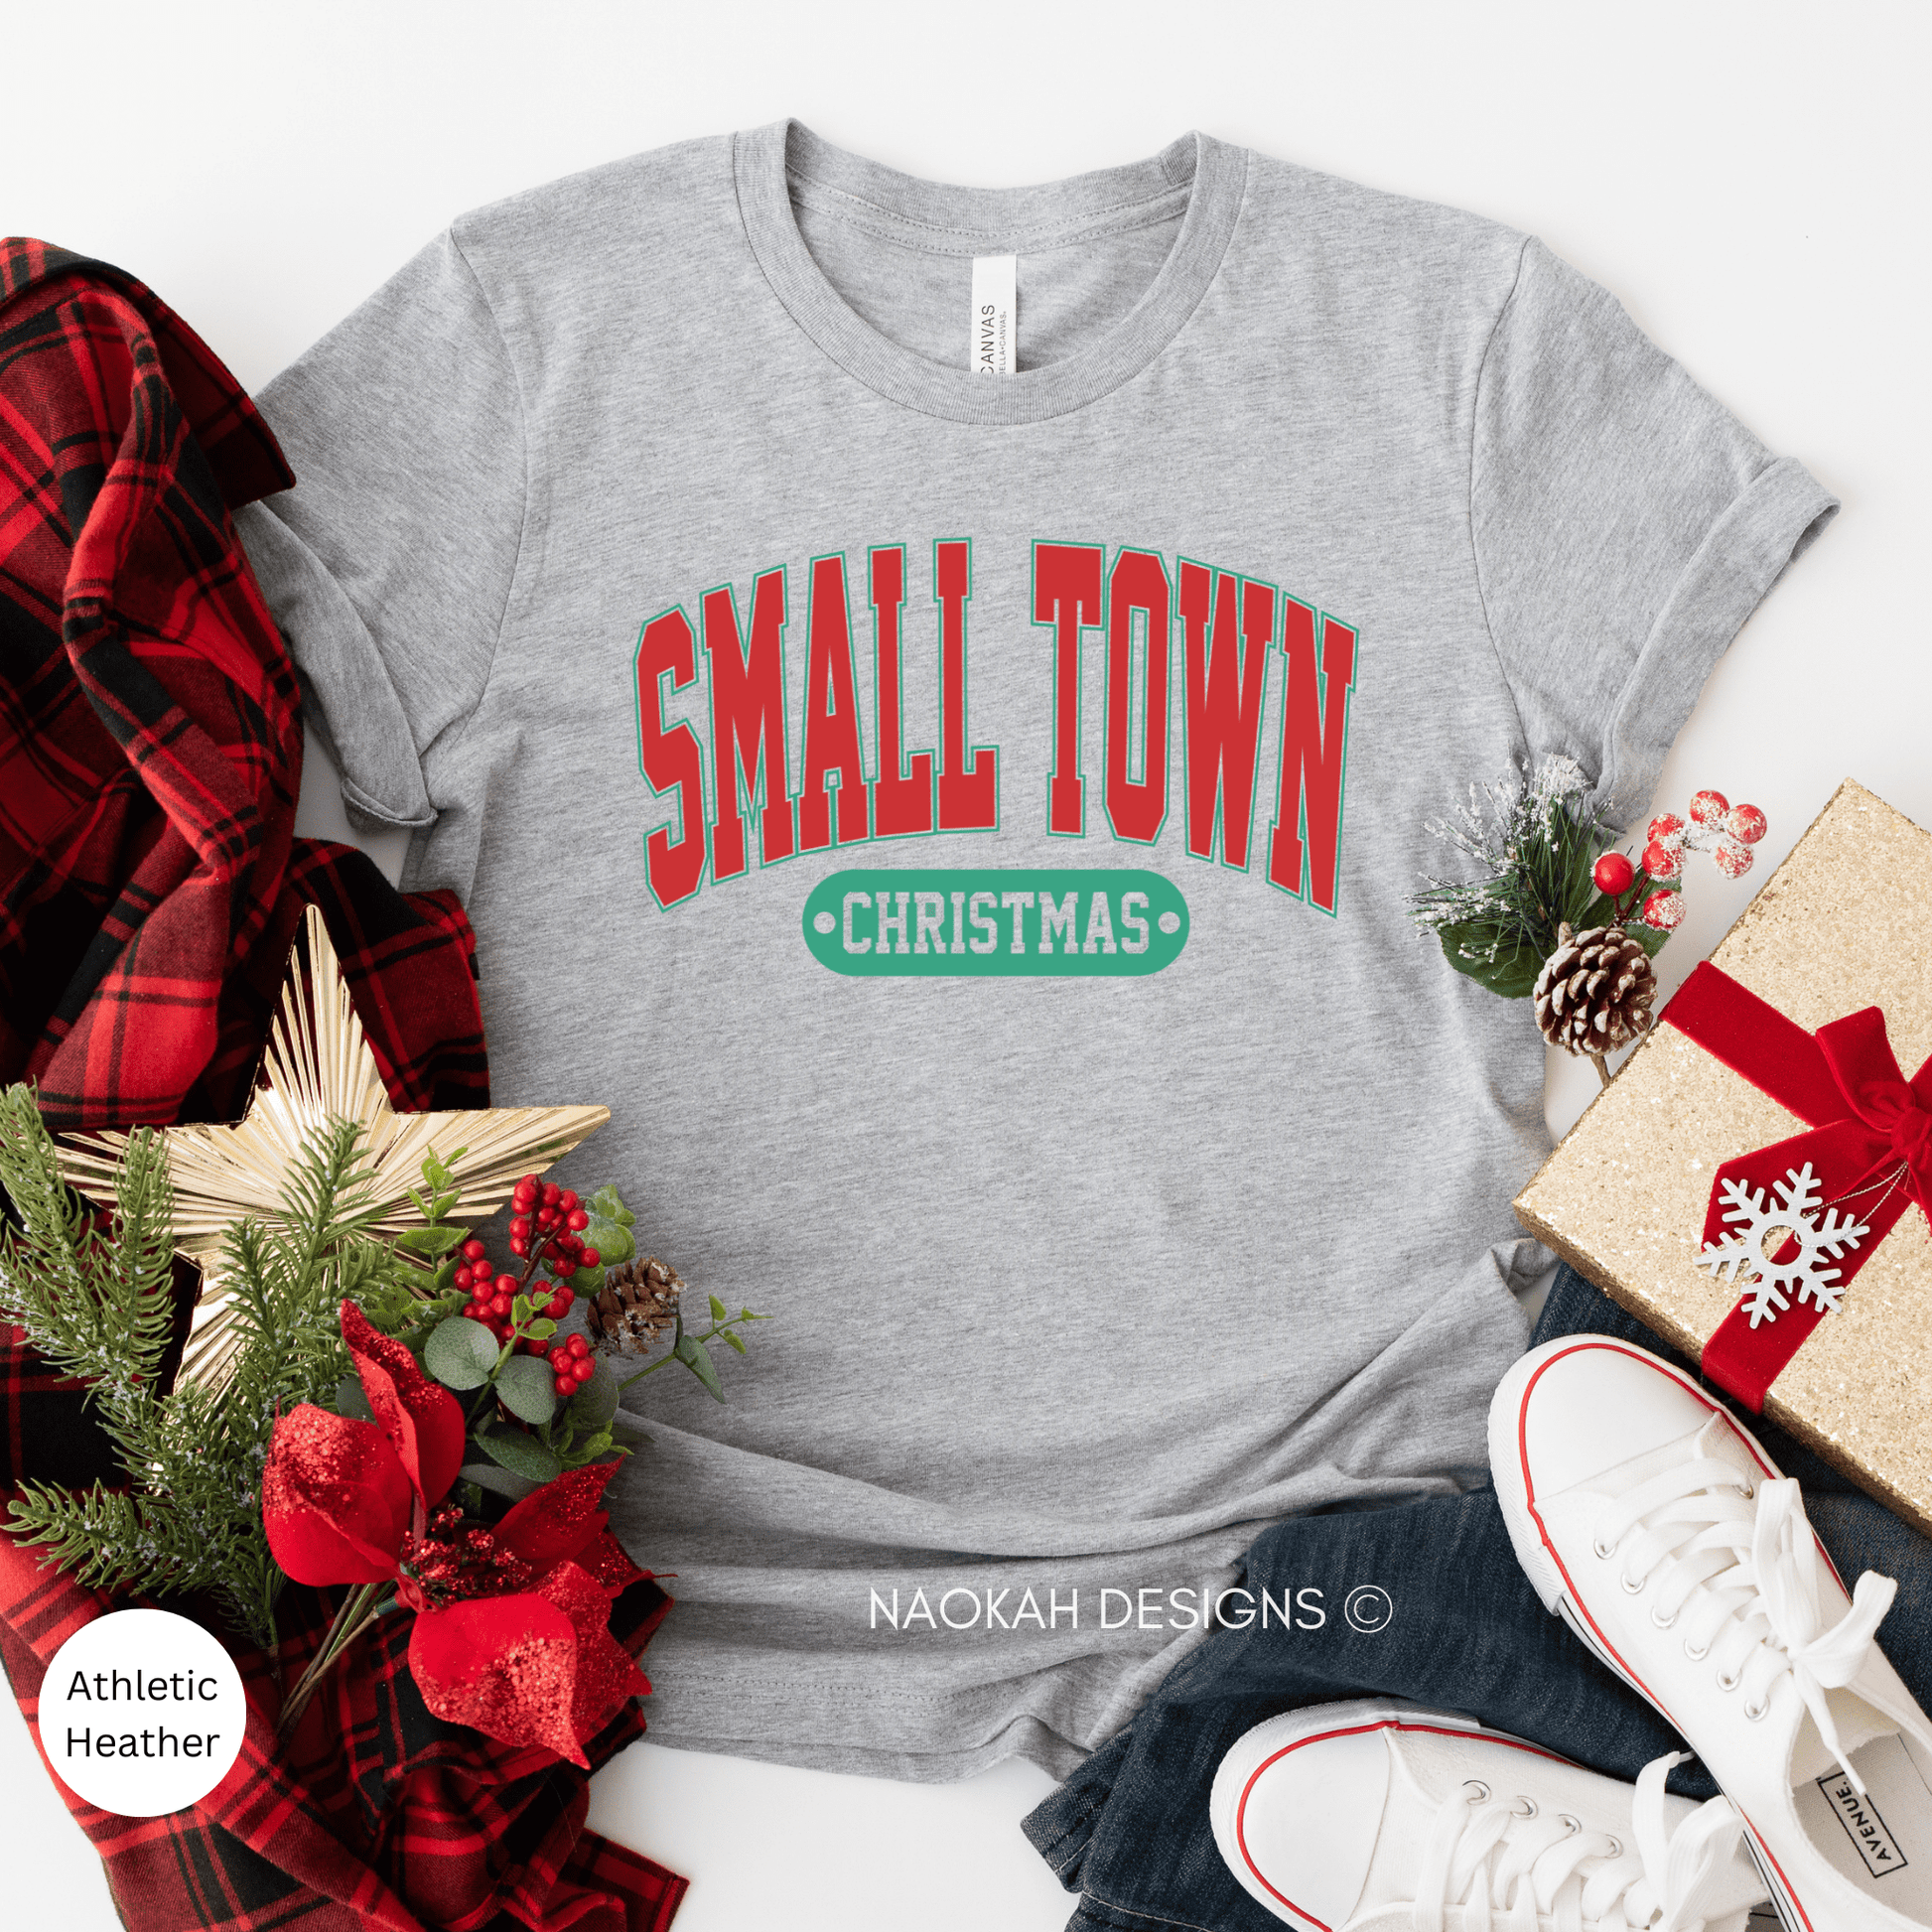 Small Town Christmas Shirt, Women's Christmas Shirt, Woman's Holiday Shirt, Christmas Gift, Home Town Christmas Shirt, Cute Holiday Tee